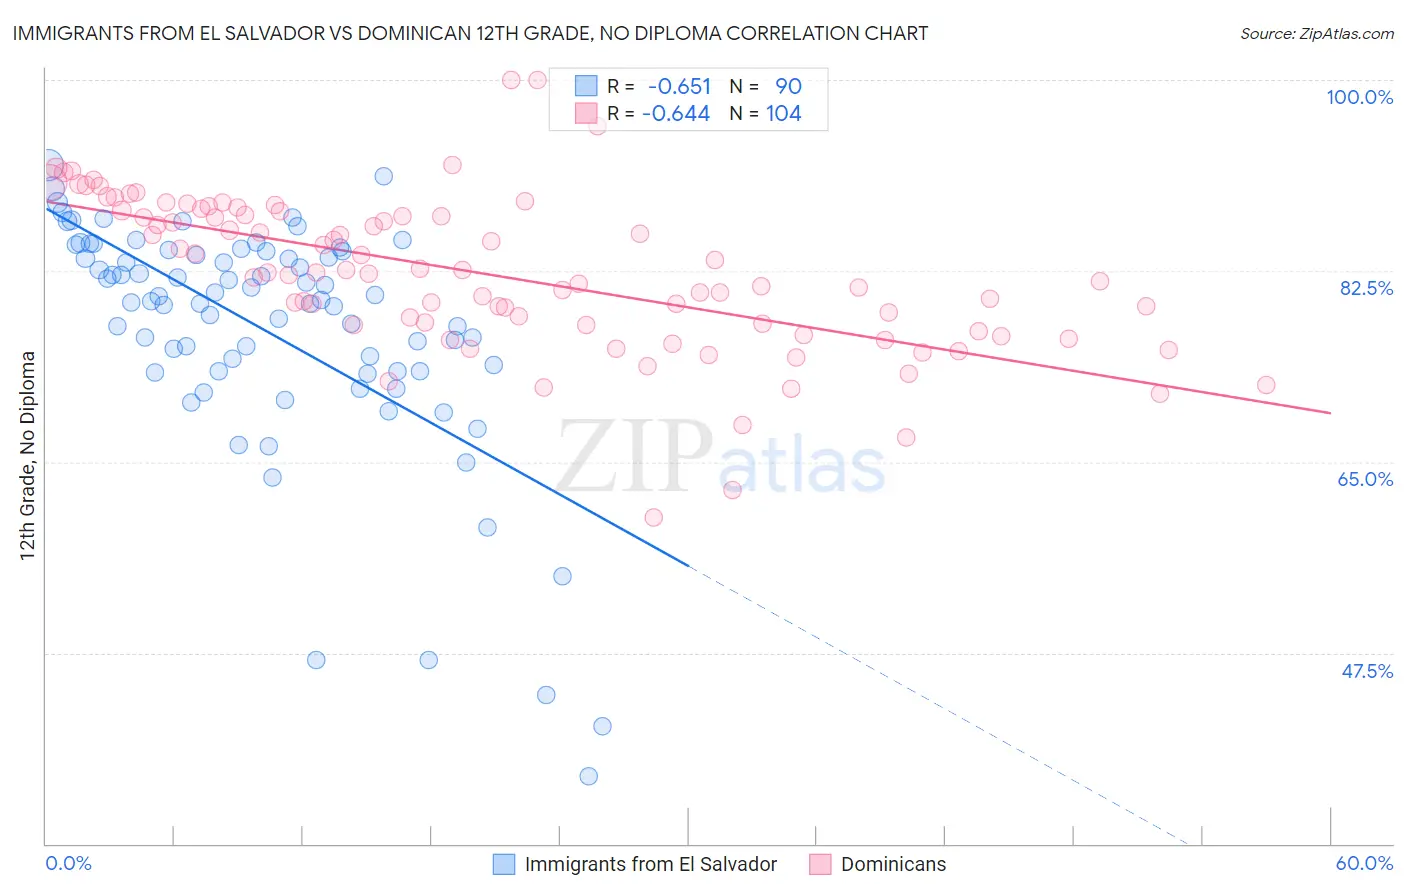 Immigrants from El Salvador vs Dominican 12th Grade, No Diploma